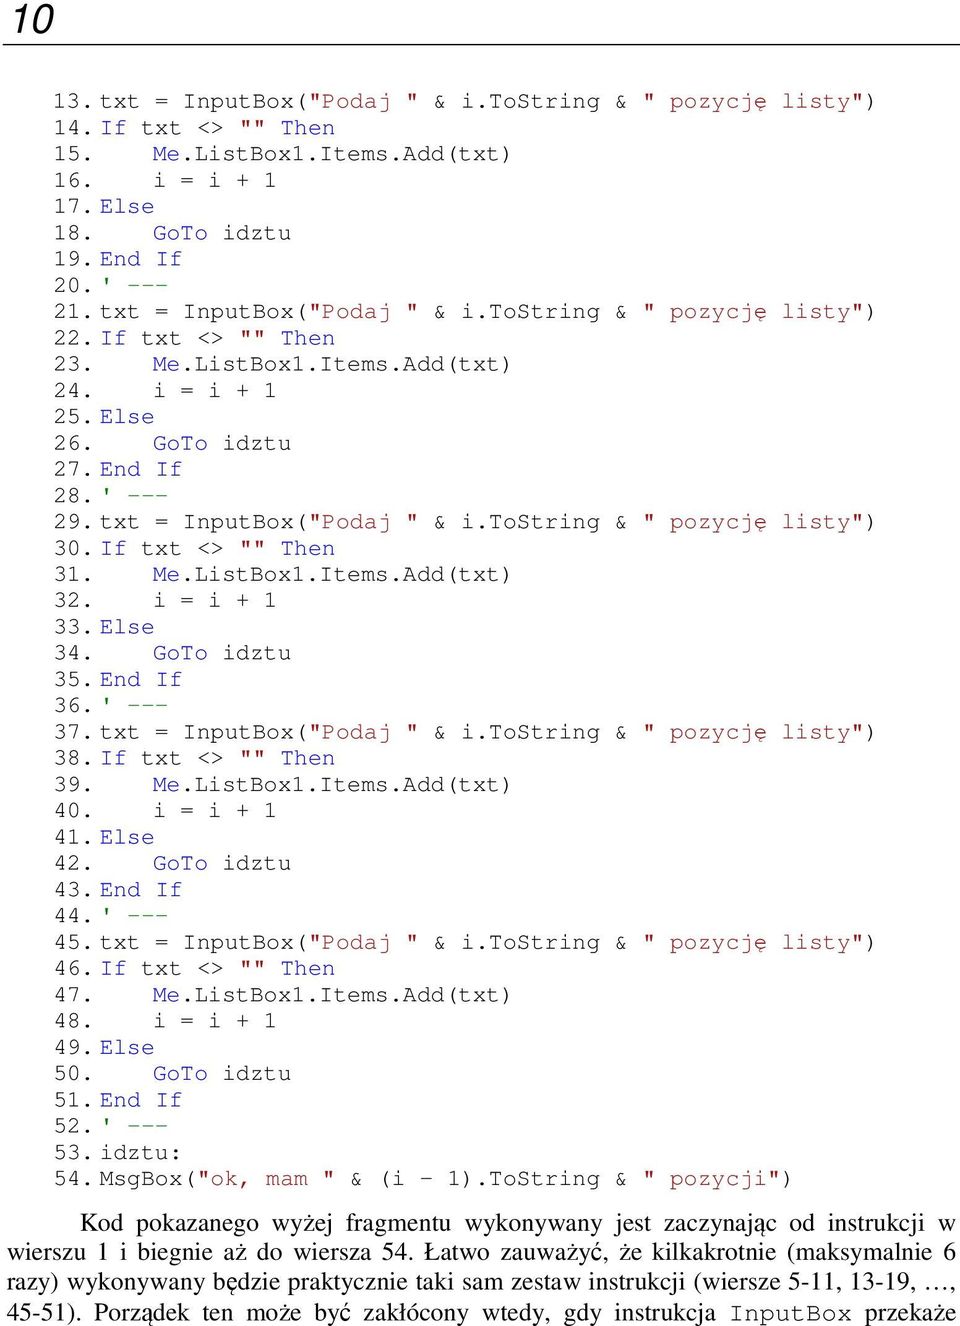 txt = InputBox("Podaj " & i.tostring & " pozycję listy") 30. If txt <> "" Then 31. Me.ListBox1.Items.Add(txt) 32. i = i + 1 33. Else 34. GoTo idztu 35. End If 36. ' --- 37.